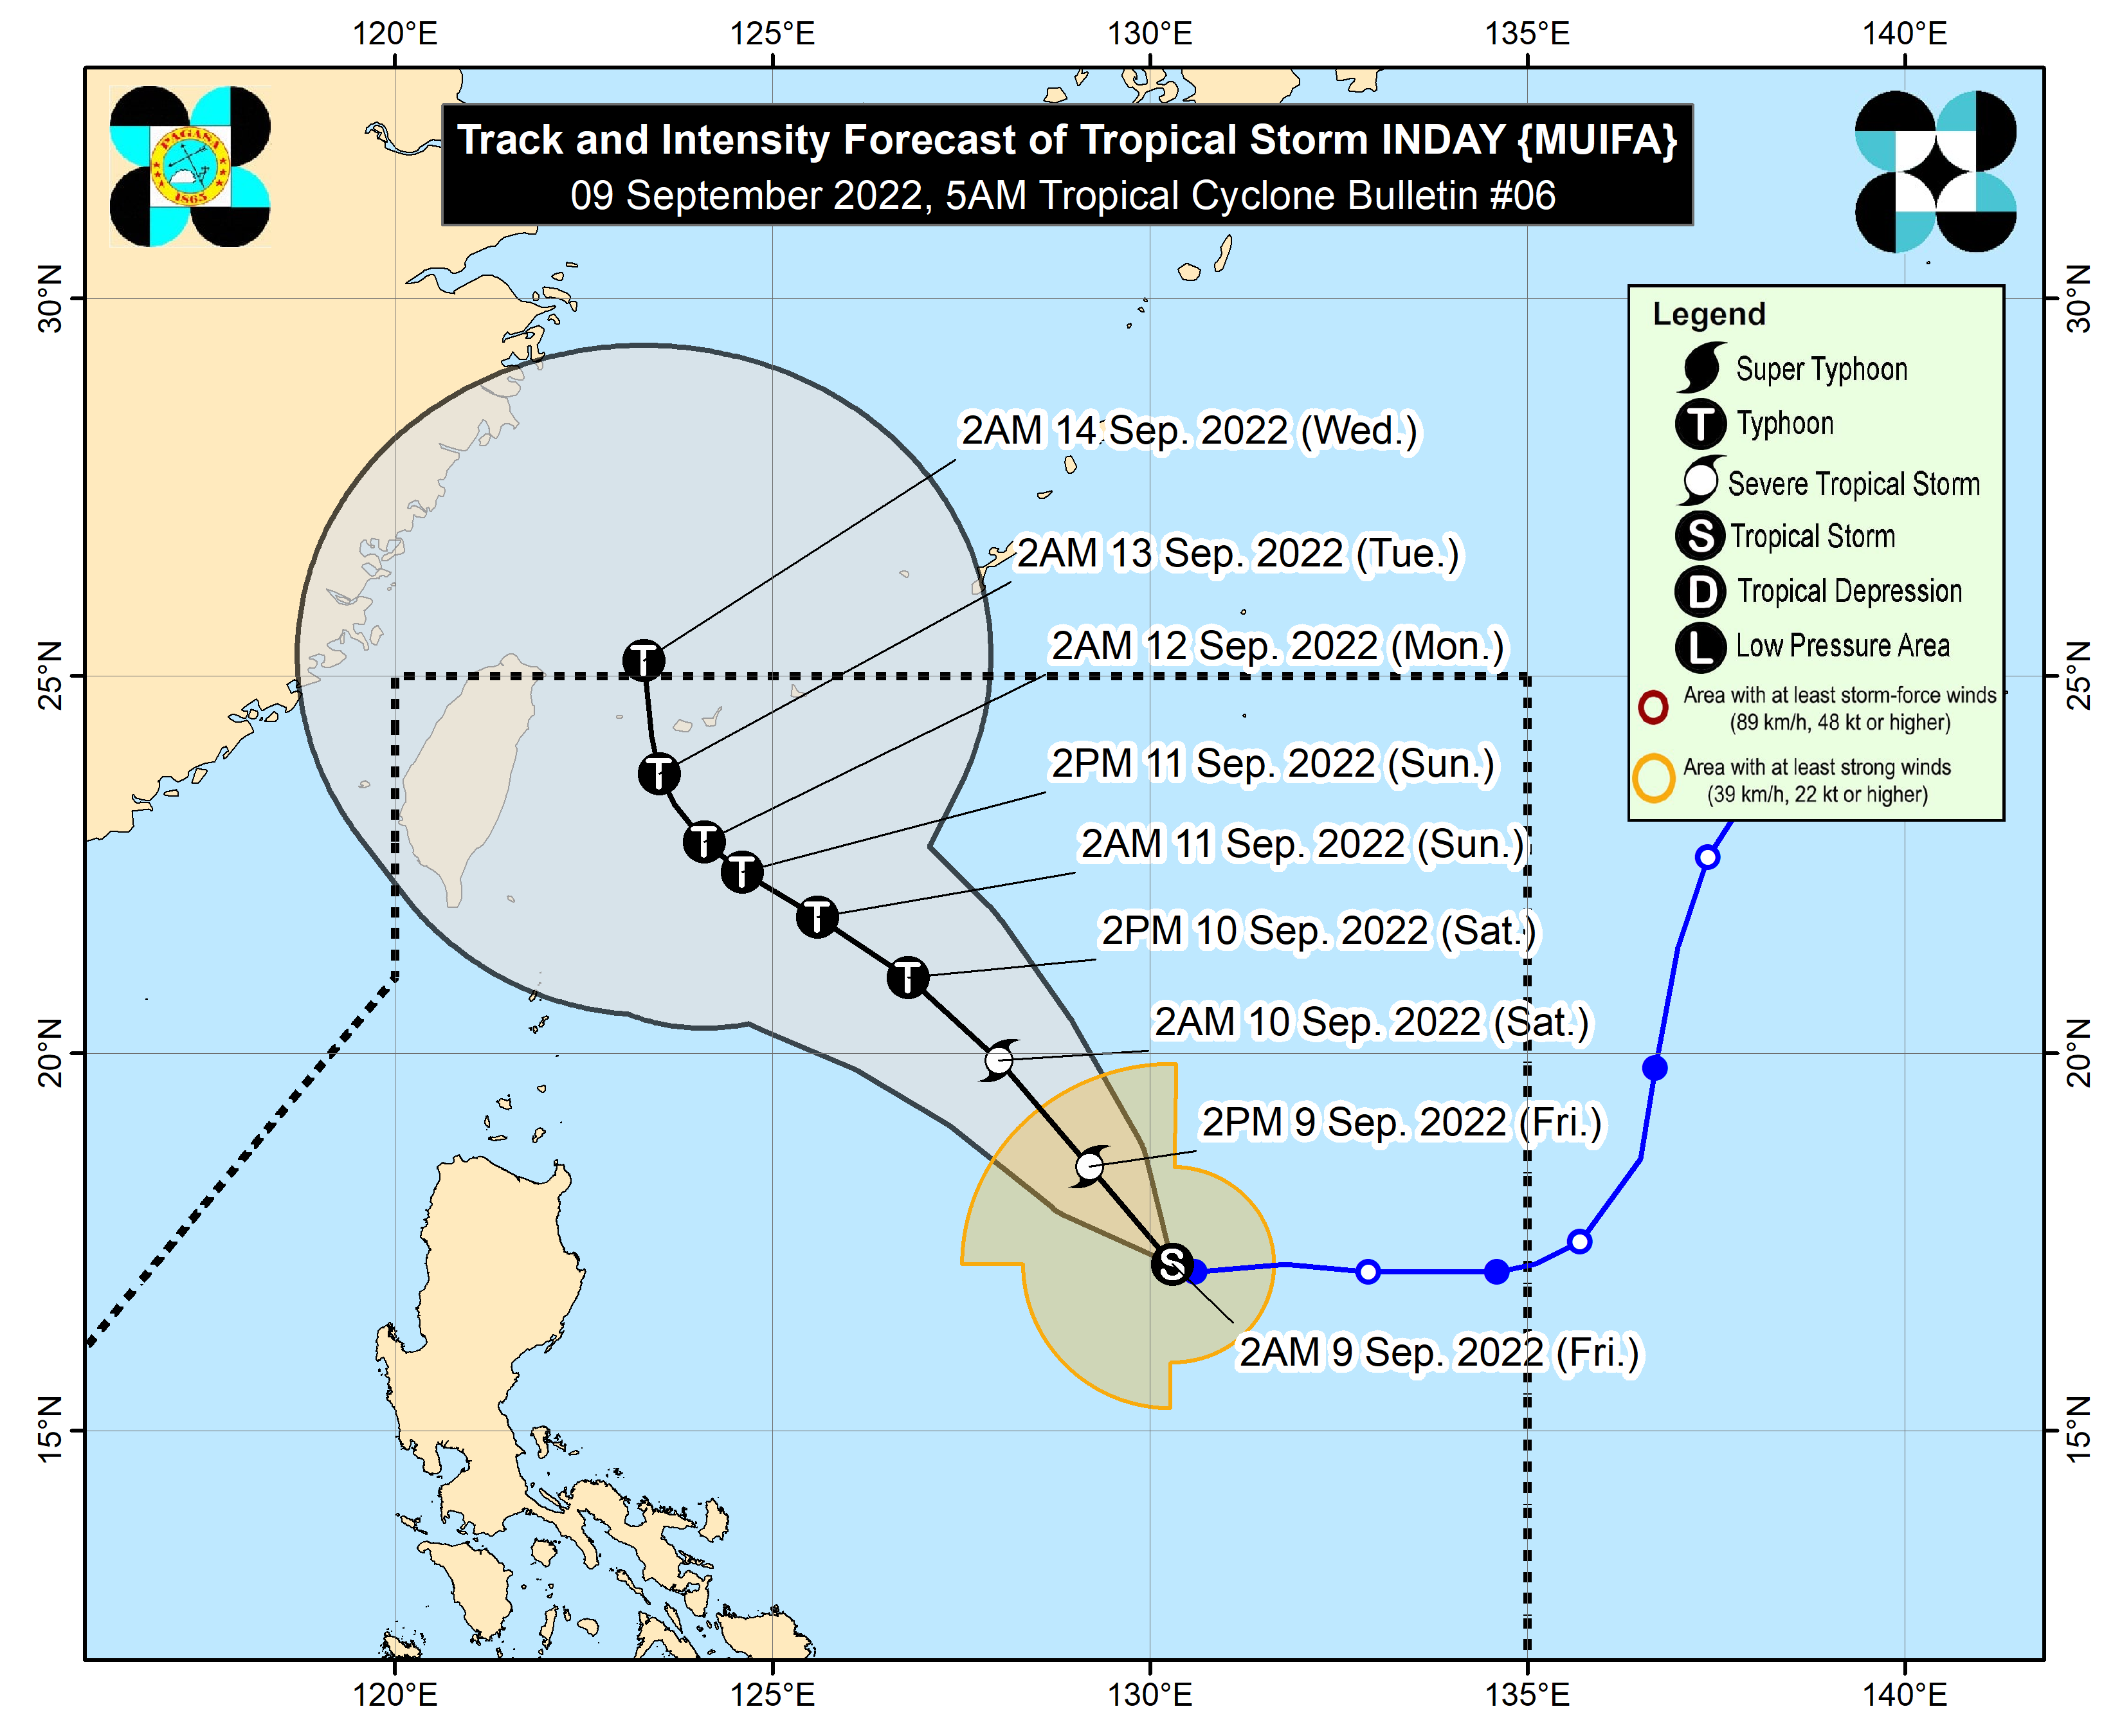 PHILIPPINEN MAGAZIN - WETTER - Wettervorhersage für die Philippinen, Freitag, den 09. September 2022